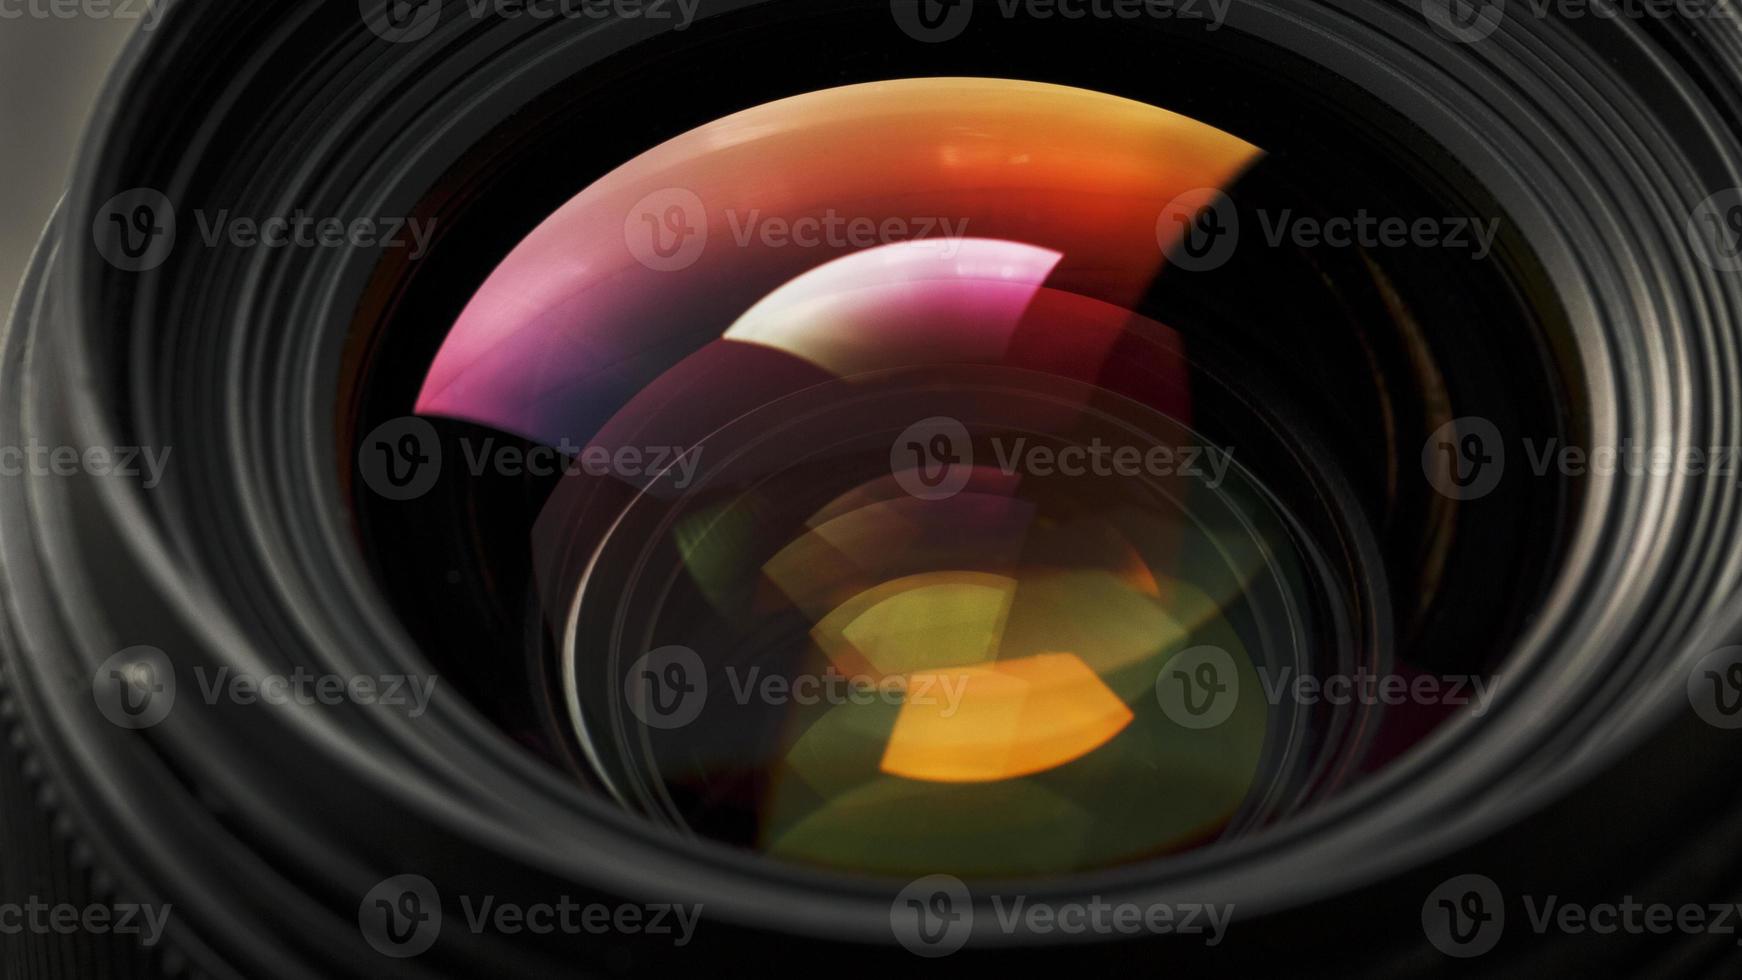 en kamera lins med en skön närbild optisk enhet som en substrat. foto